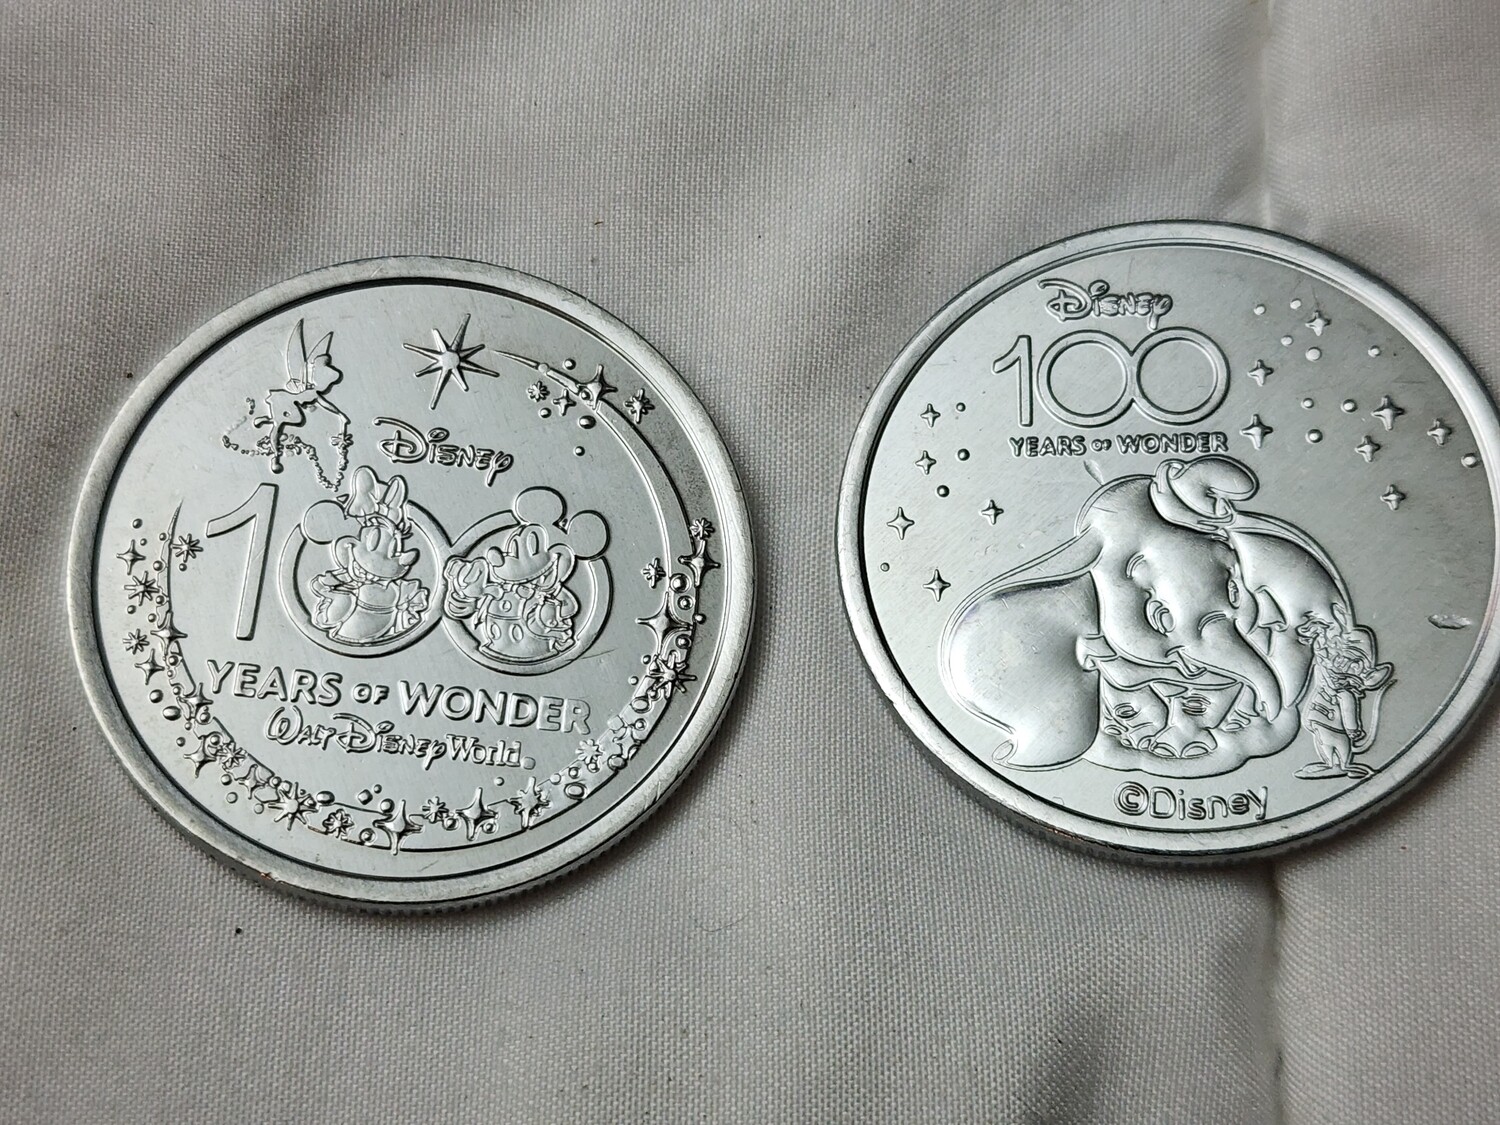 Dumbo Disney 100 Years of Wonder medallion coin